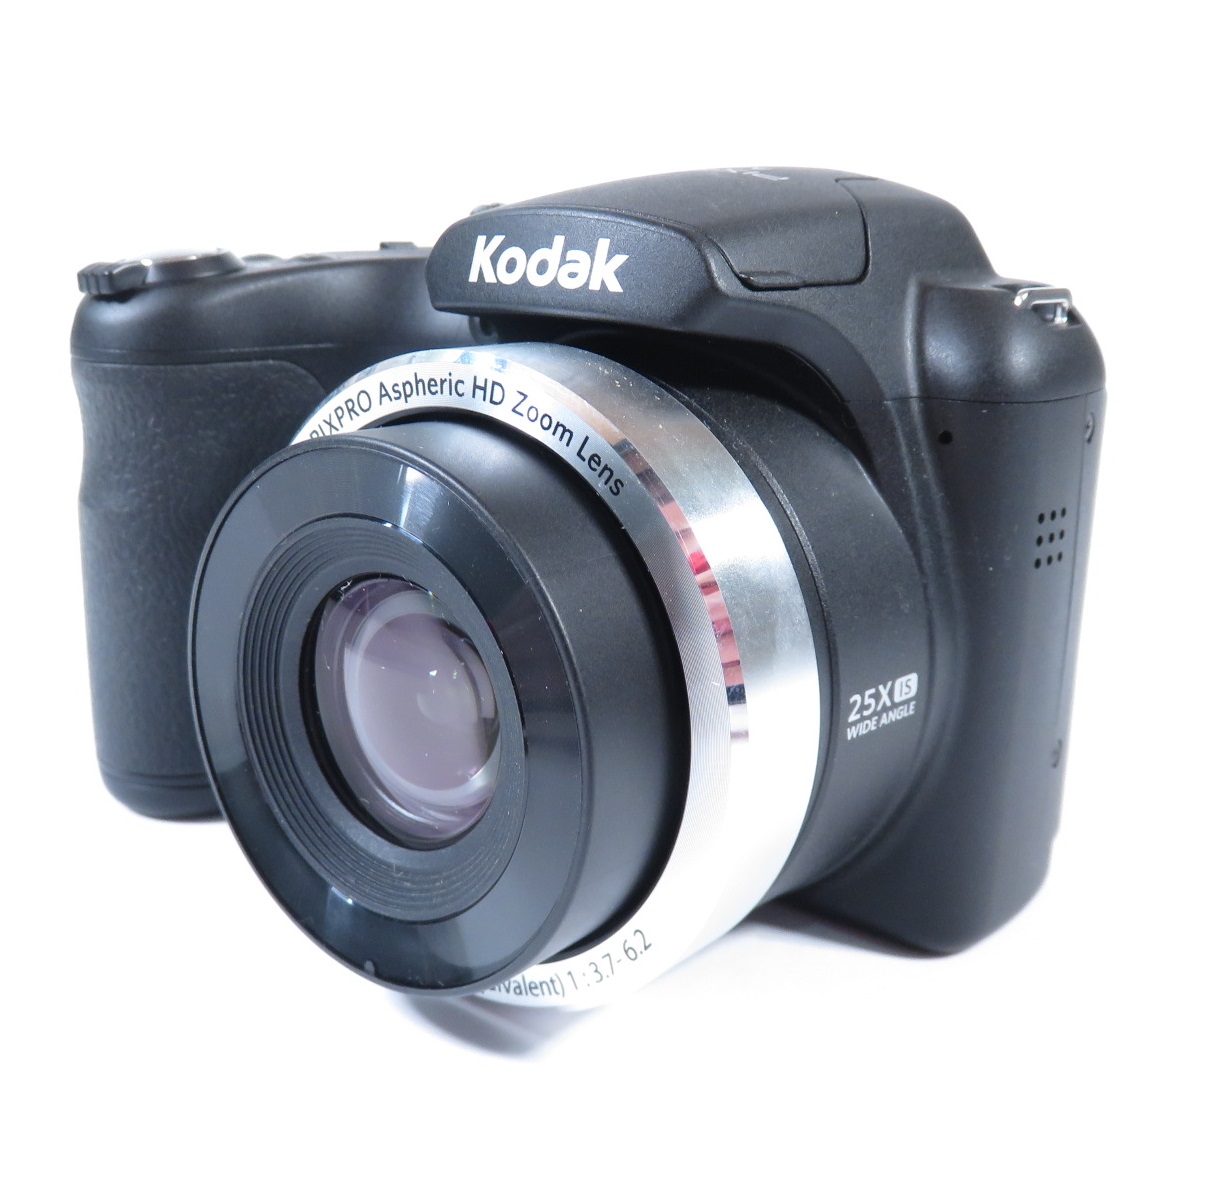 Kodak PIXPRO AZ252 3 Point & Shoot Digital Camera - Black for